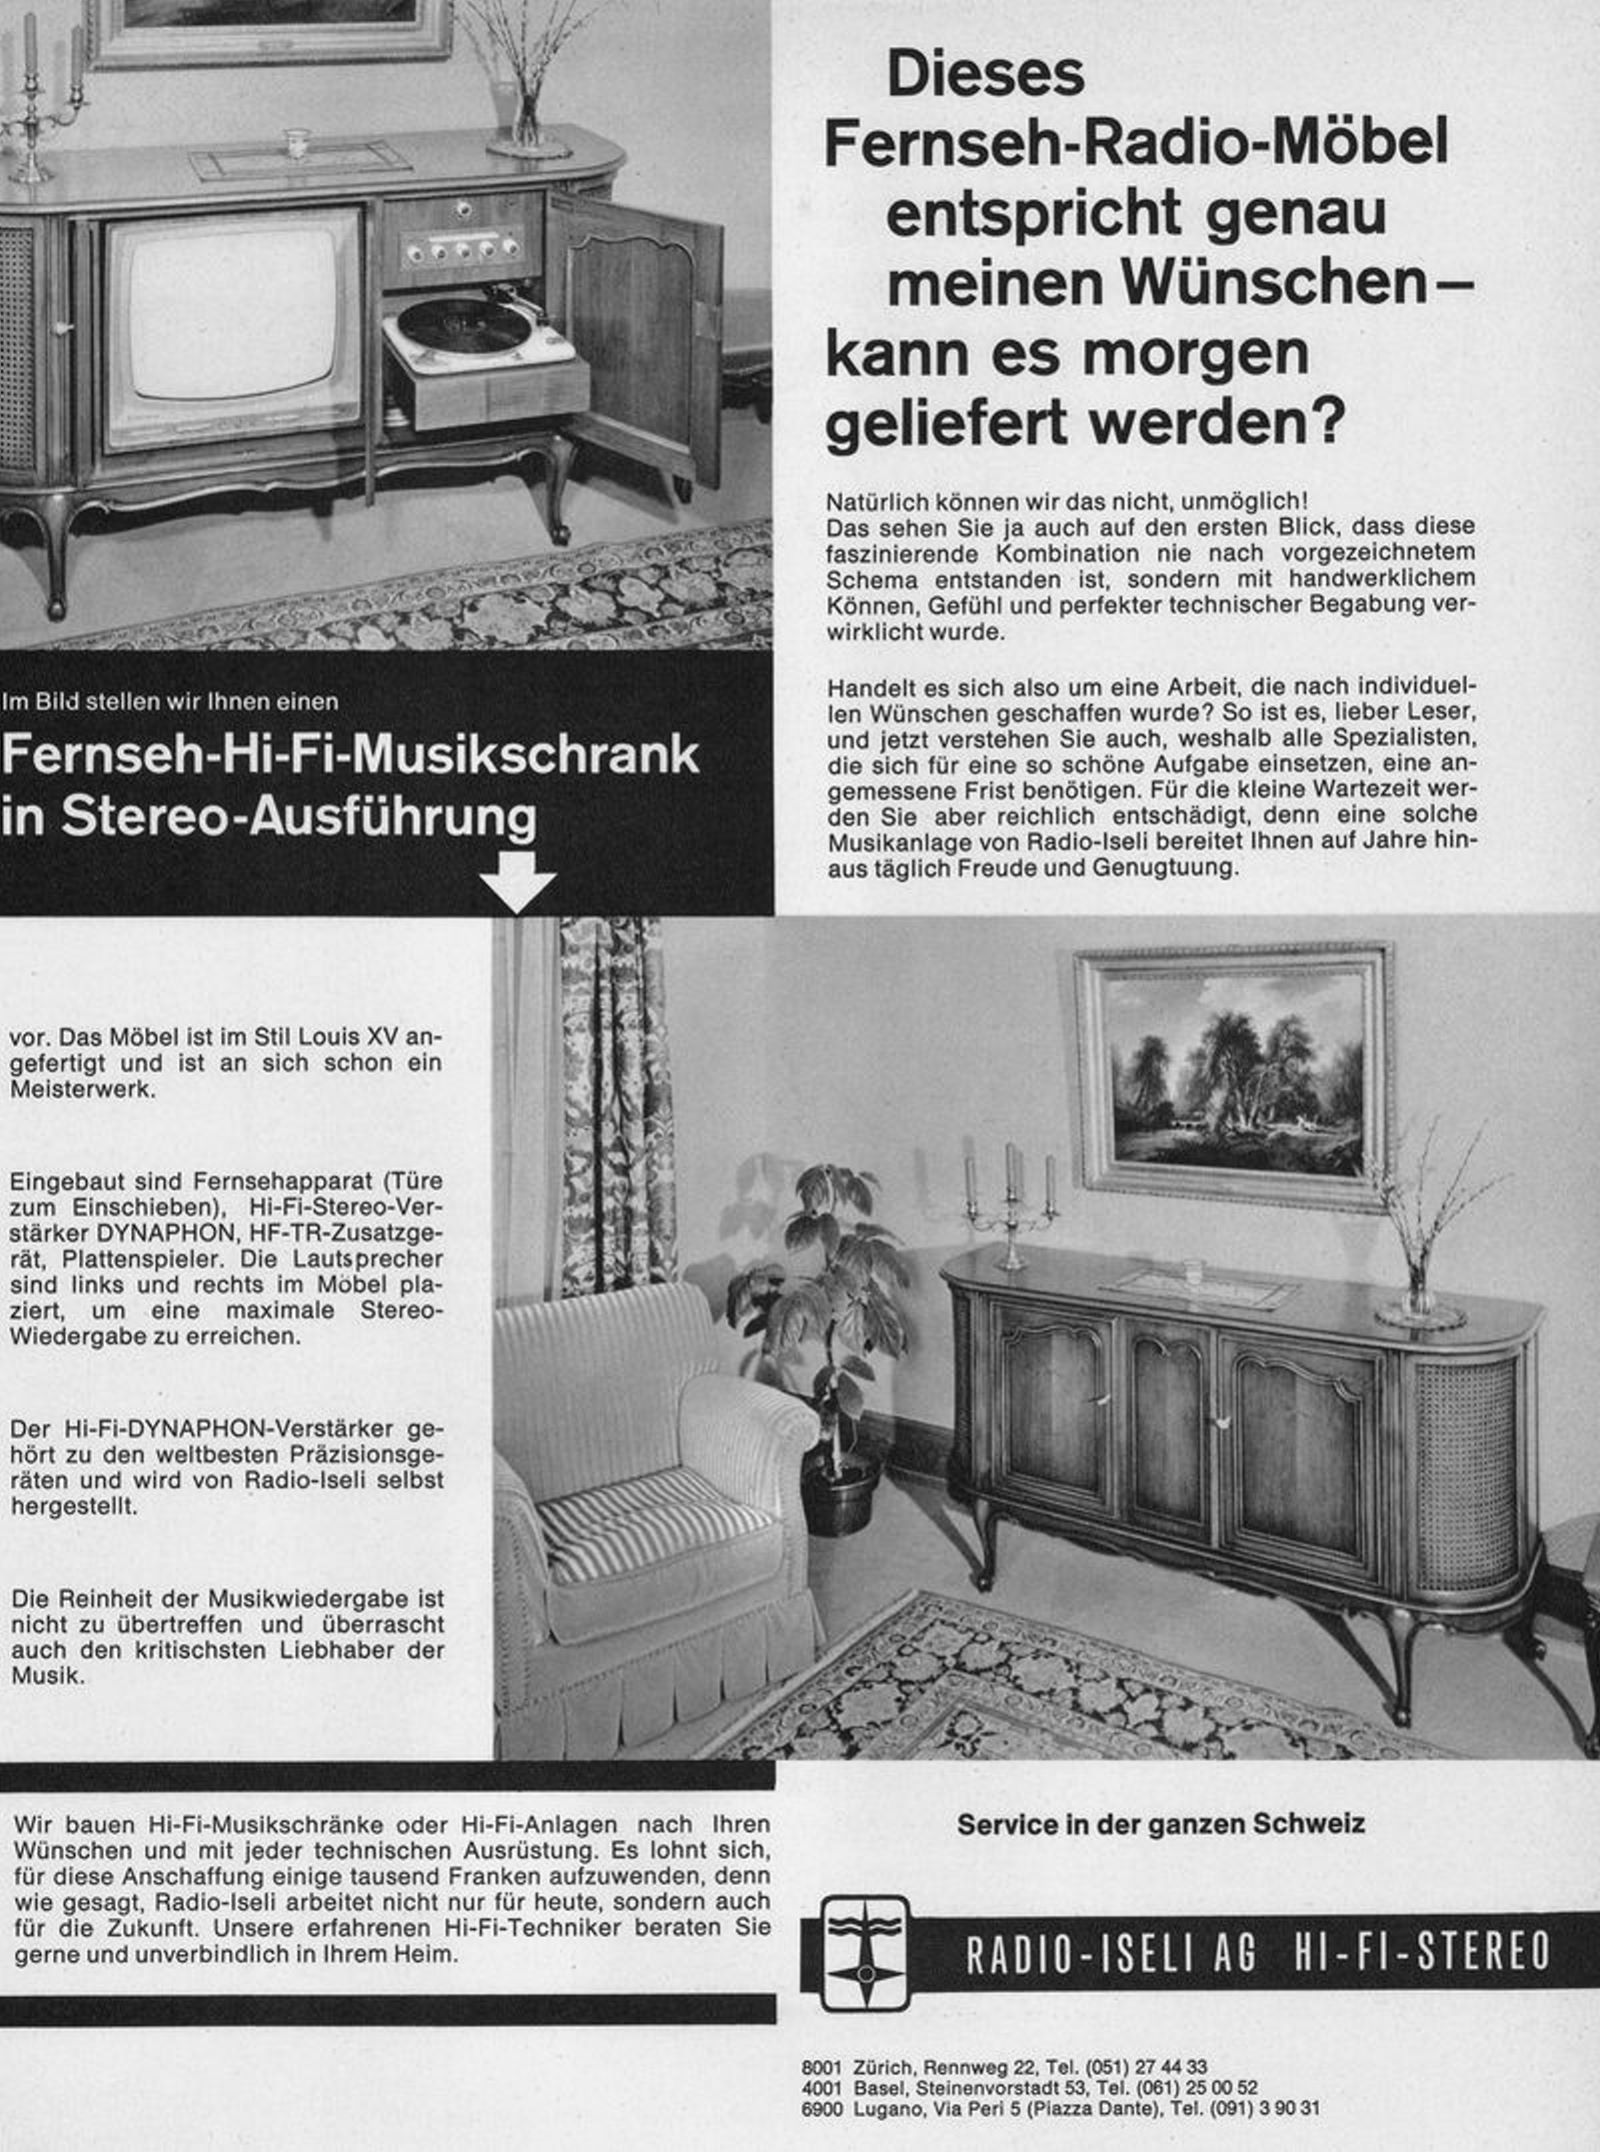 Radio-Iseli 1965 1-3.jpg